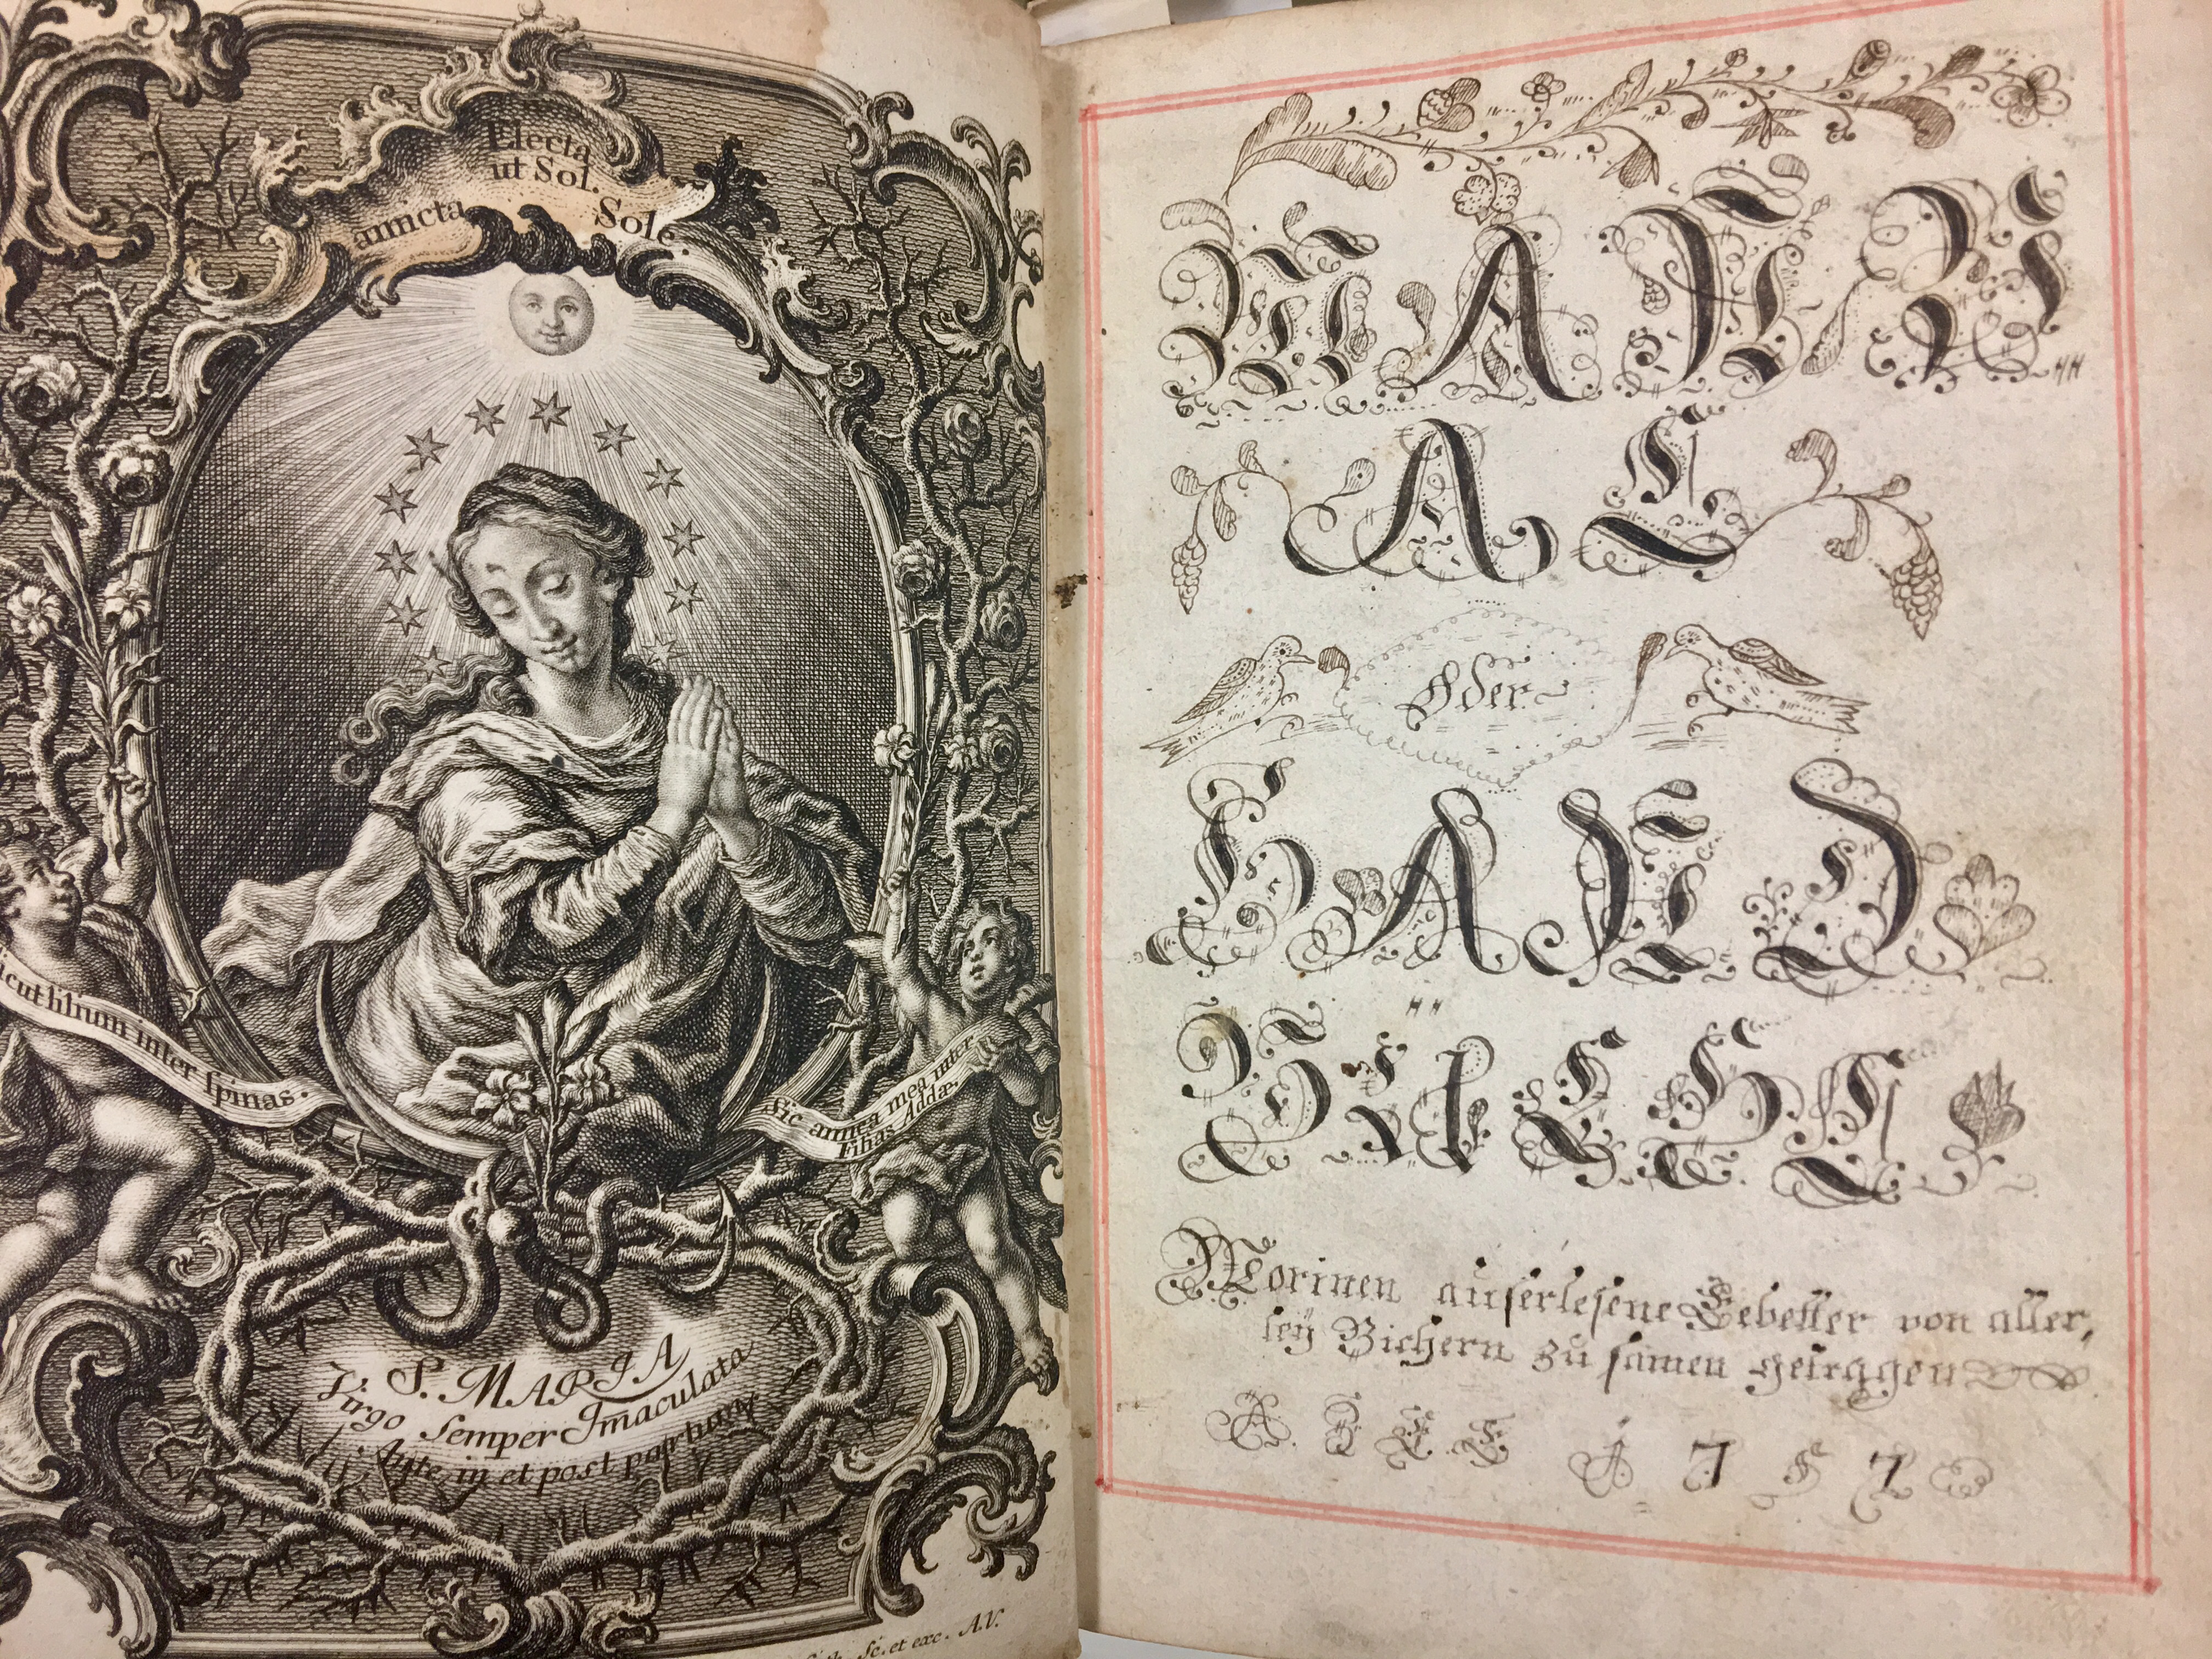 Pages from "Manual, oder, Handbuchl : worinen auserlesene Gebetter von allerley Bichern zu samen getragen," a handwritten book of prayers from 1757